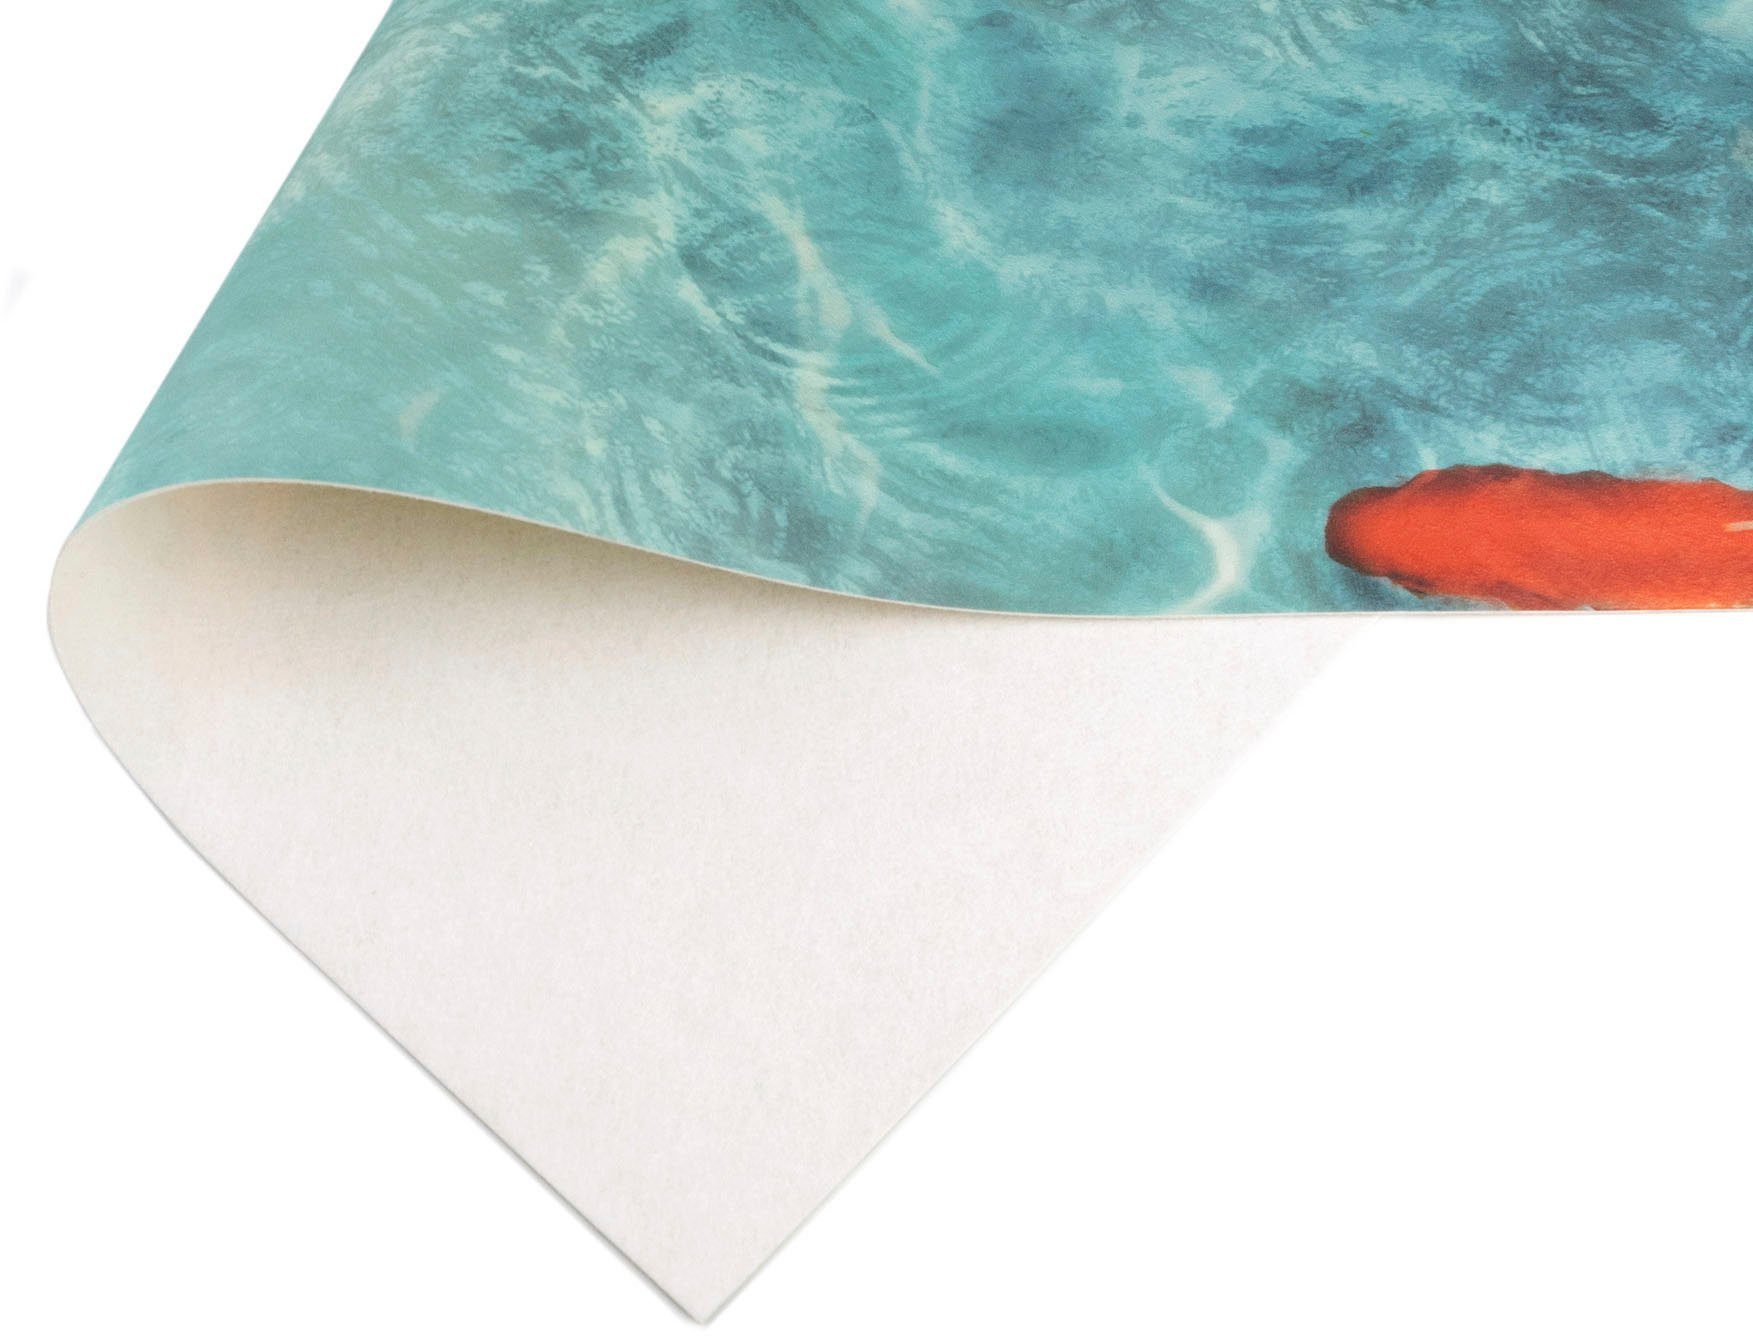 Textil, Küchenläufer KOI, Primaflor-Ideen in Höhe: Vinyl-Läufer rechteckig, aus Küche Koi Fisch, Küchenläufer Vinyl, Motiv abwischbar, mm, 2,5